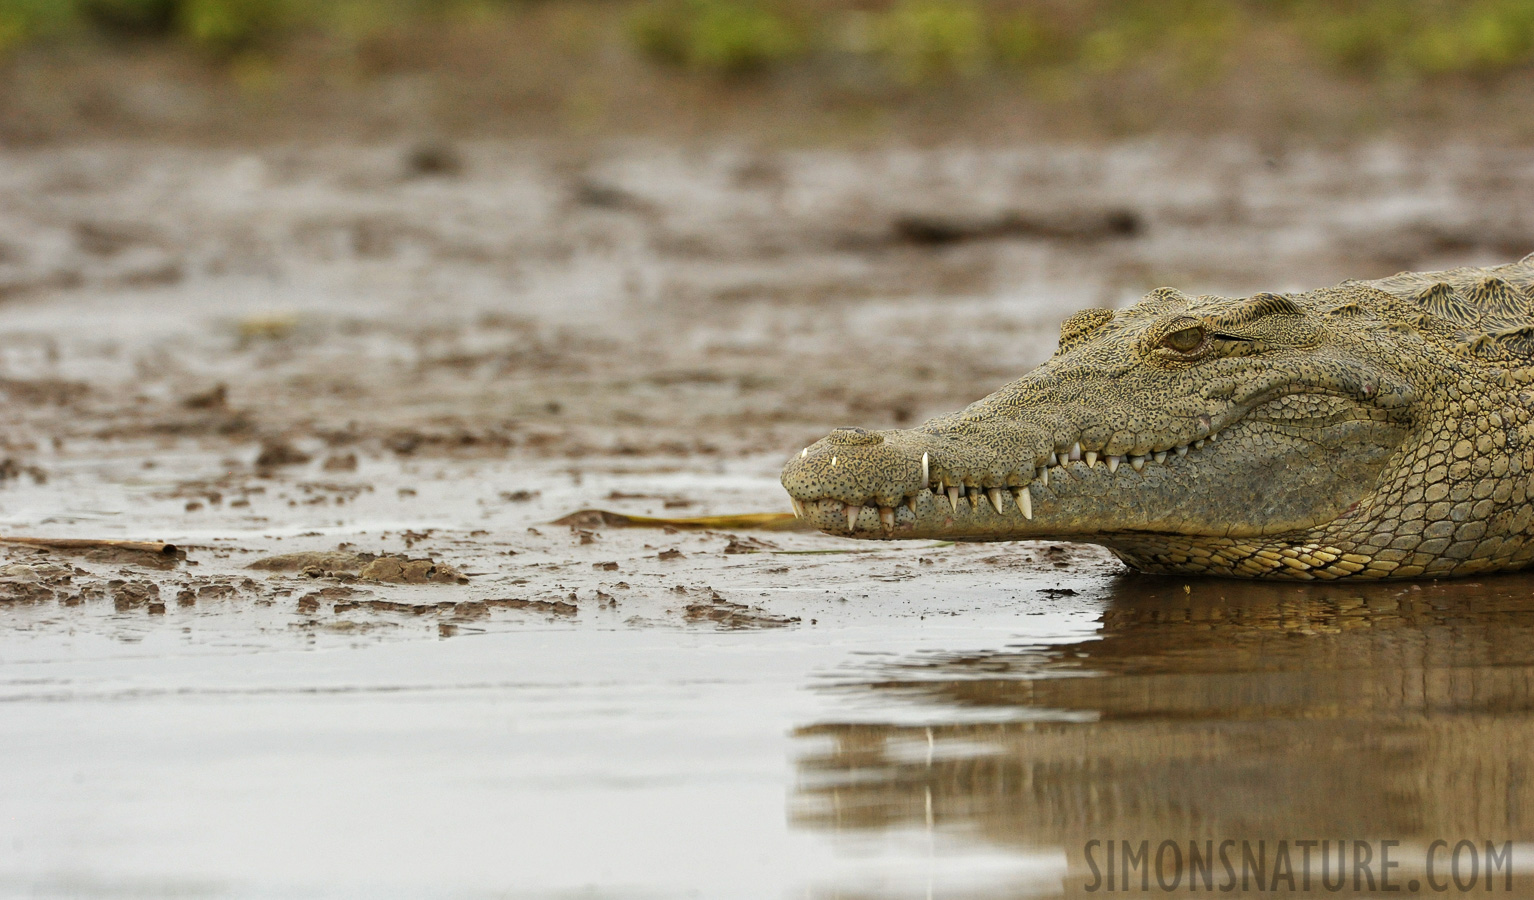 Crocodylus niloticus pauciscutatus [550 mm, 1/3200 sec at f / 9.0, ISO 2000]